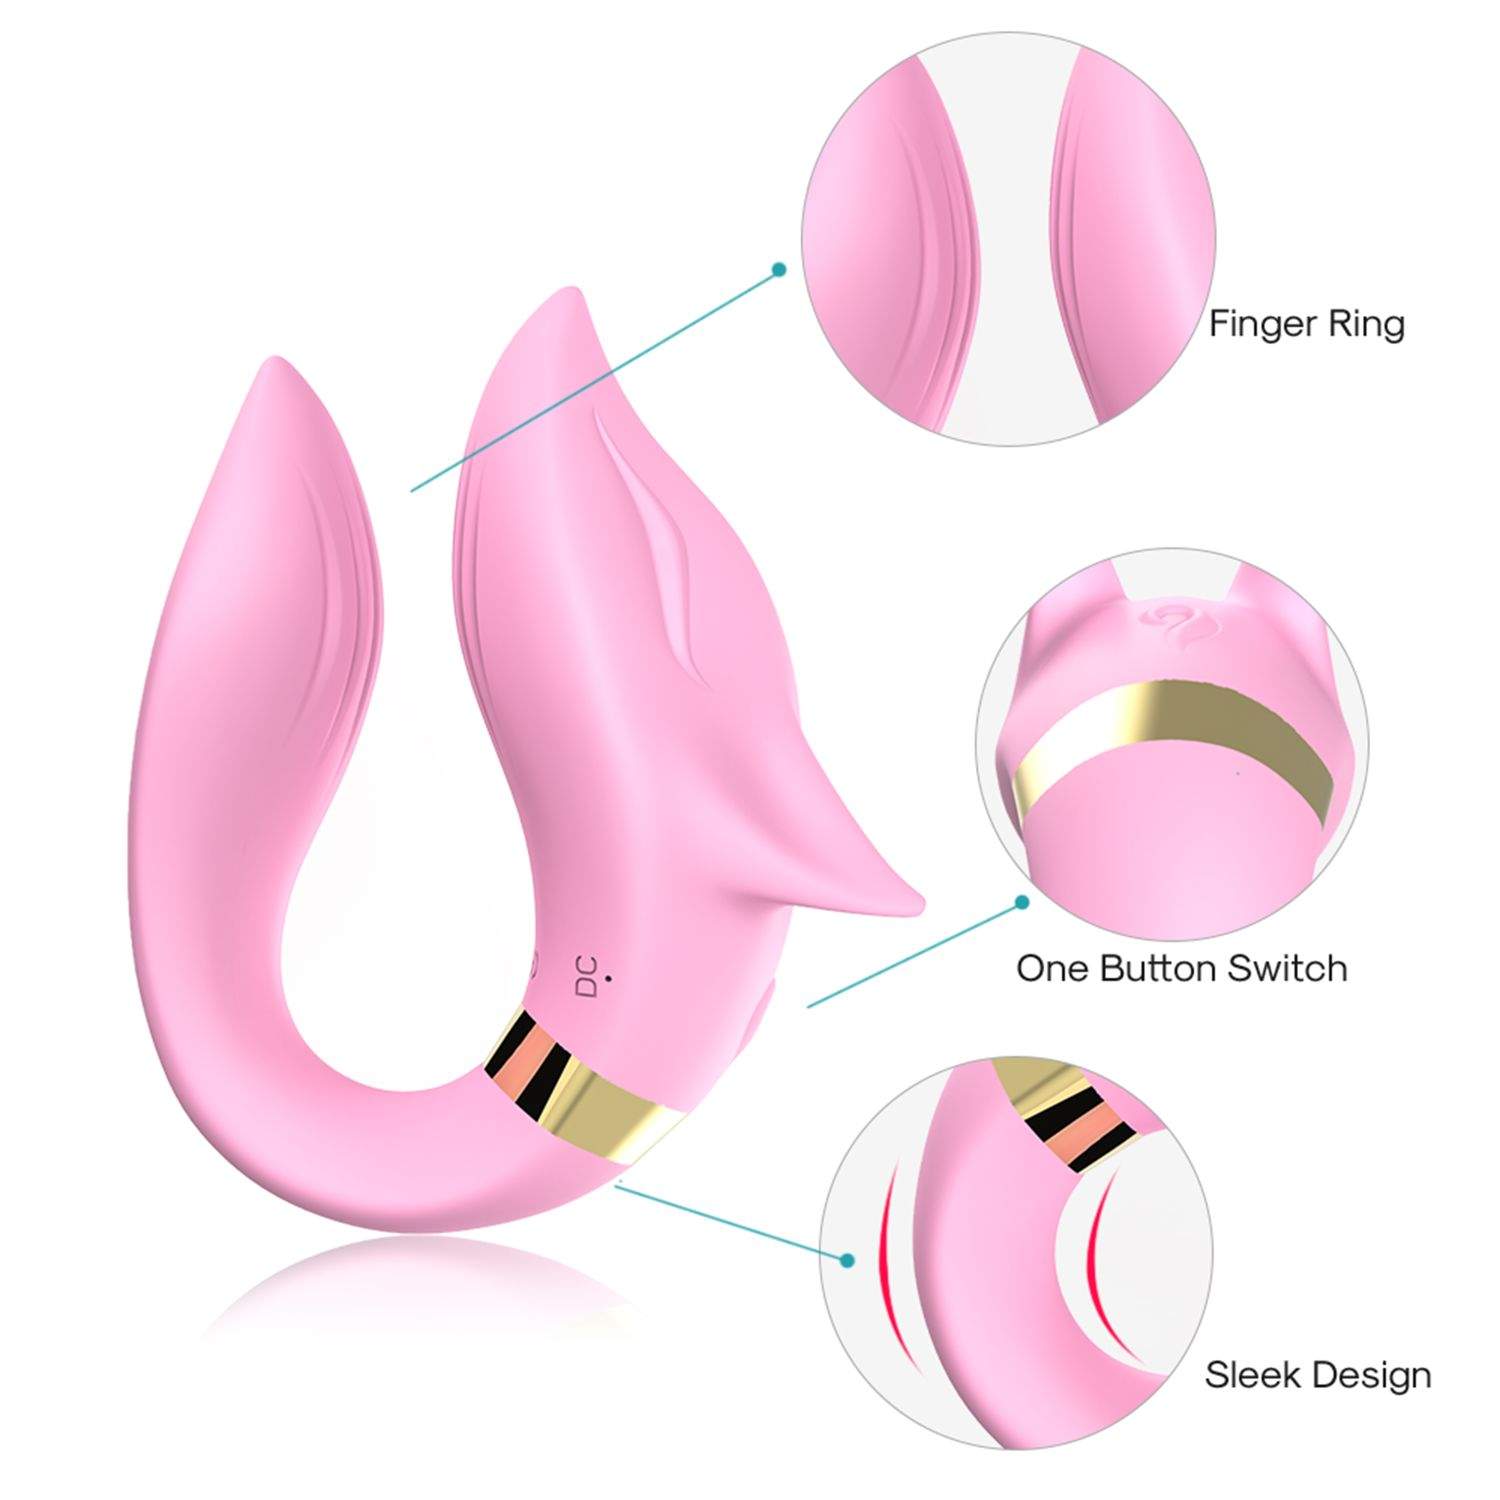 Ekskluzywny wibrator dla par- silikonowy, różowy w kształcie liska